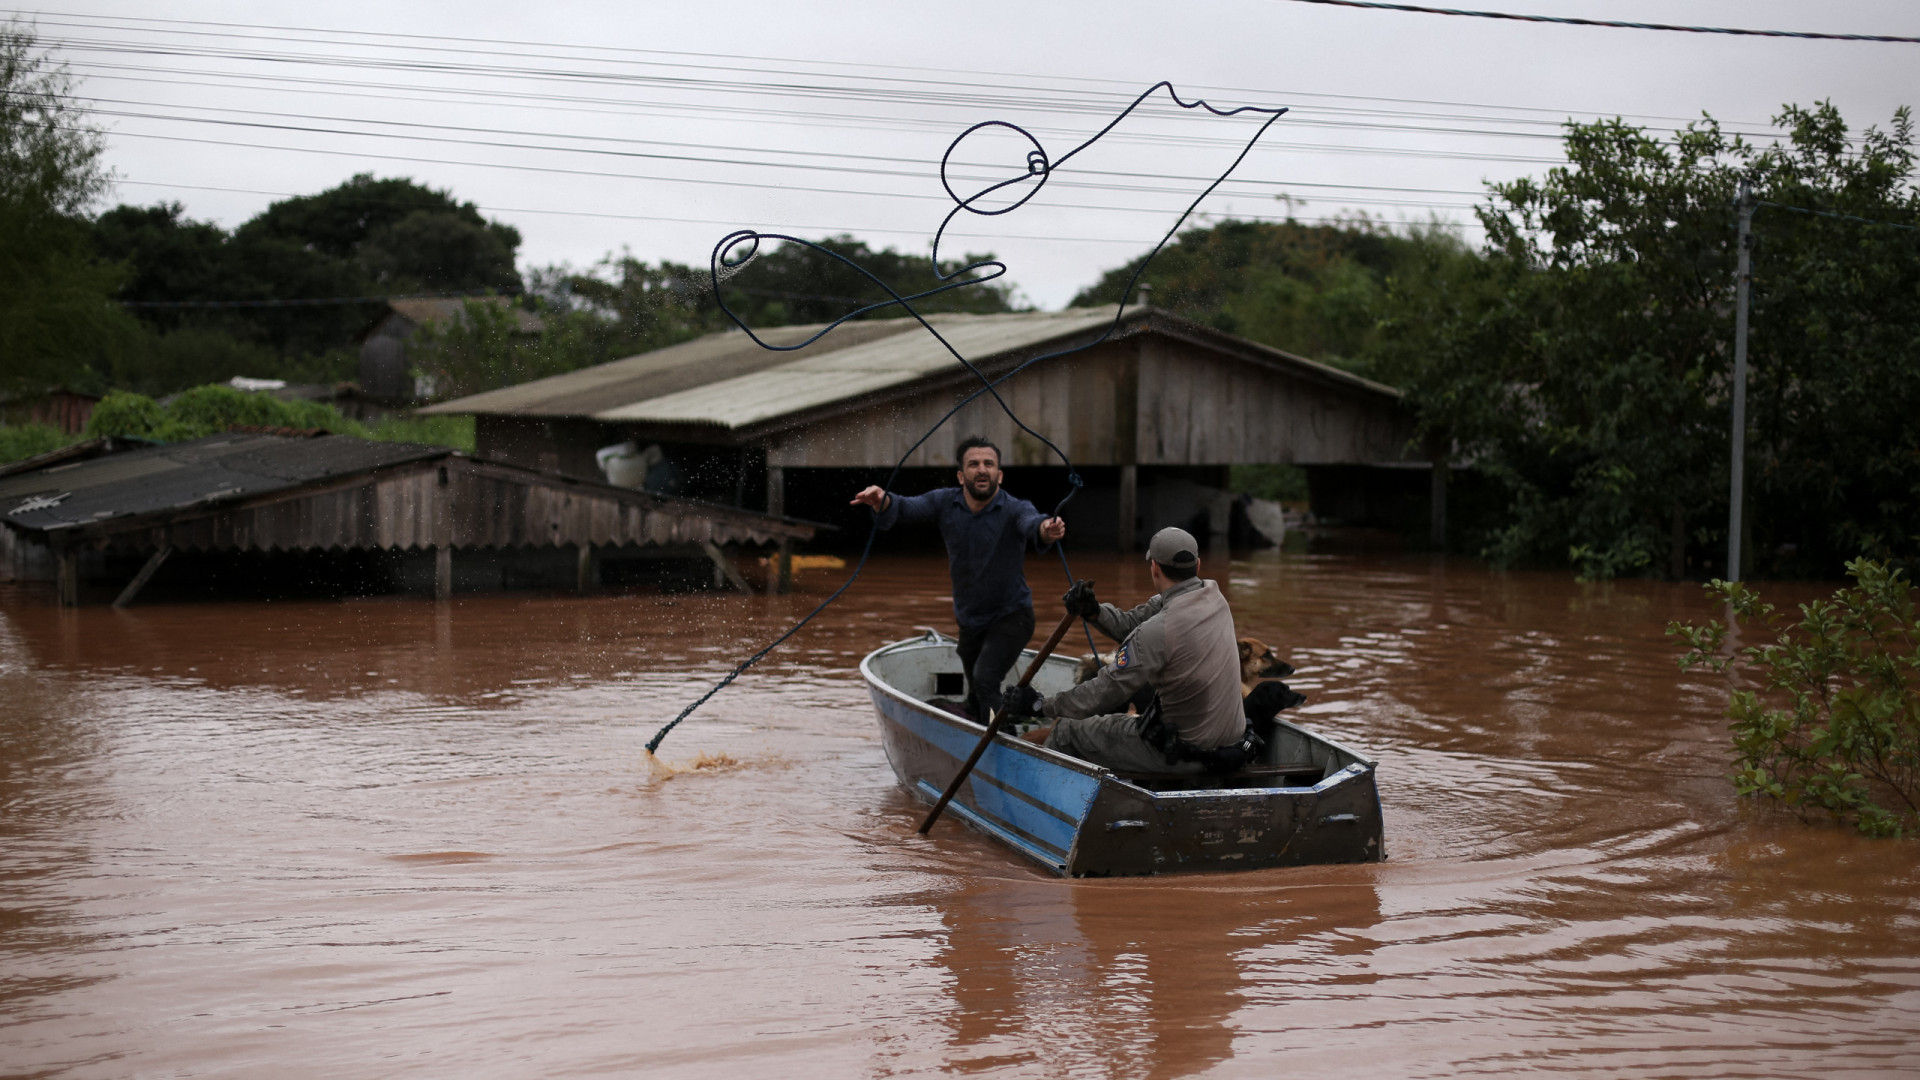 Alerta sobe com elevação da Lagoa dos Patos; 600 pessoas são resgatadas na madrugada em Rio Grande